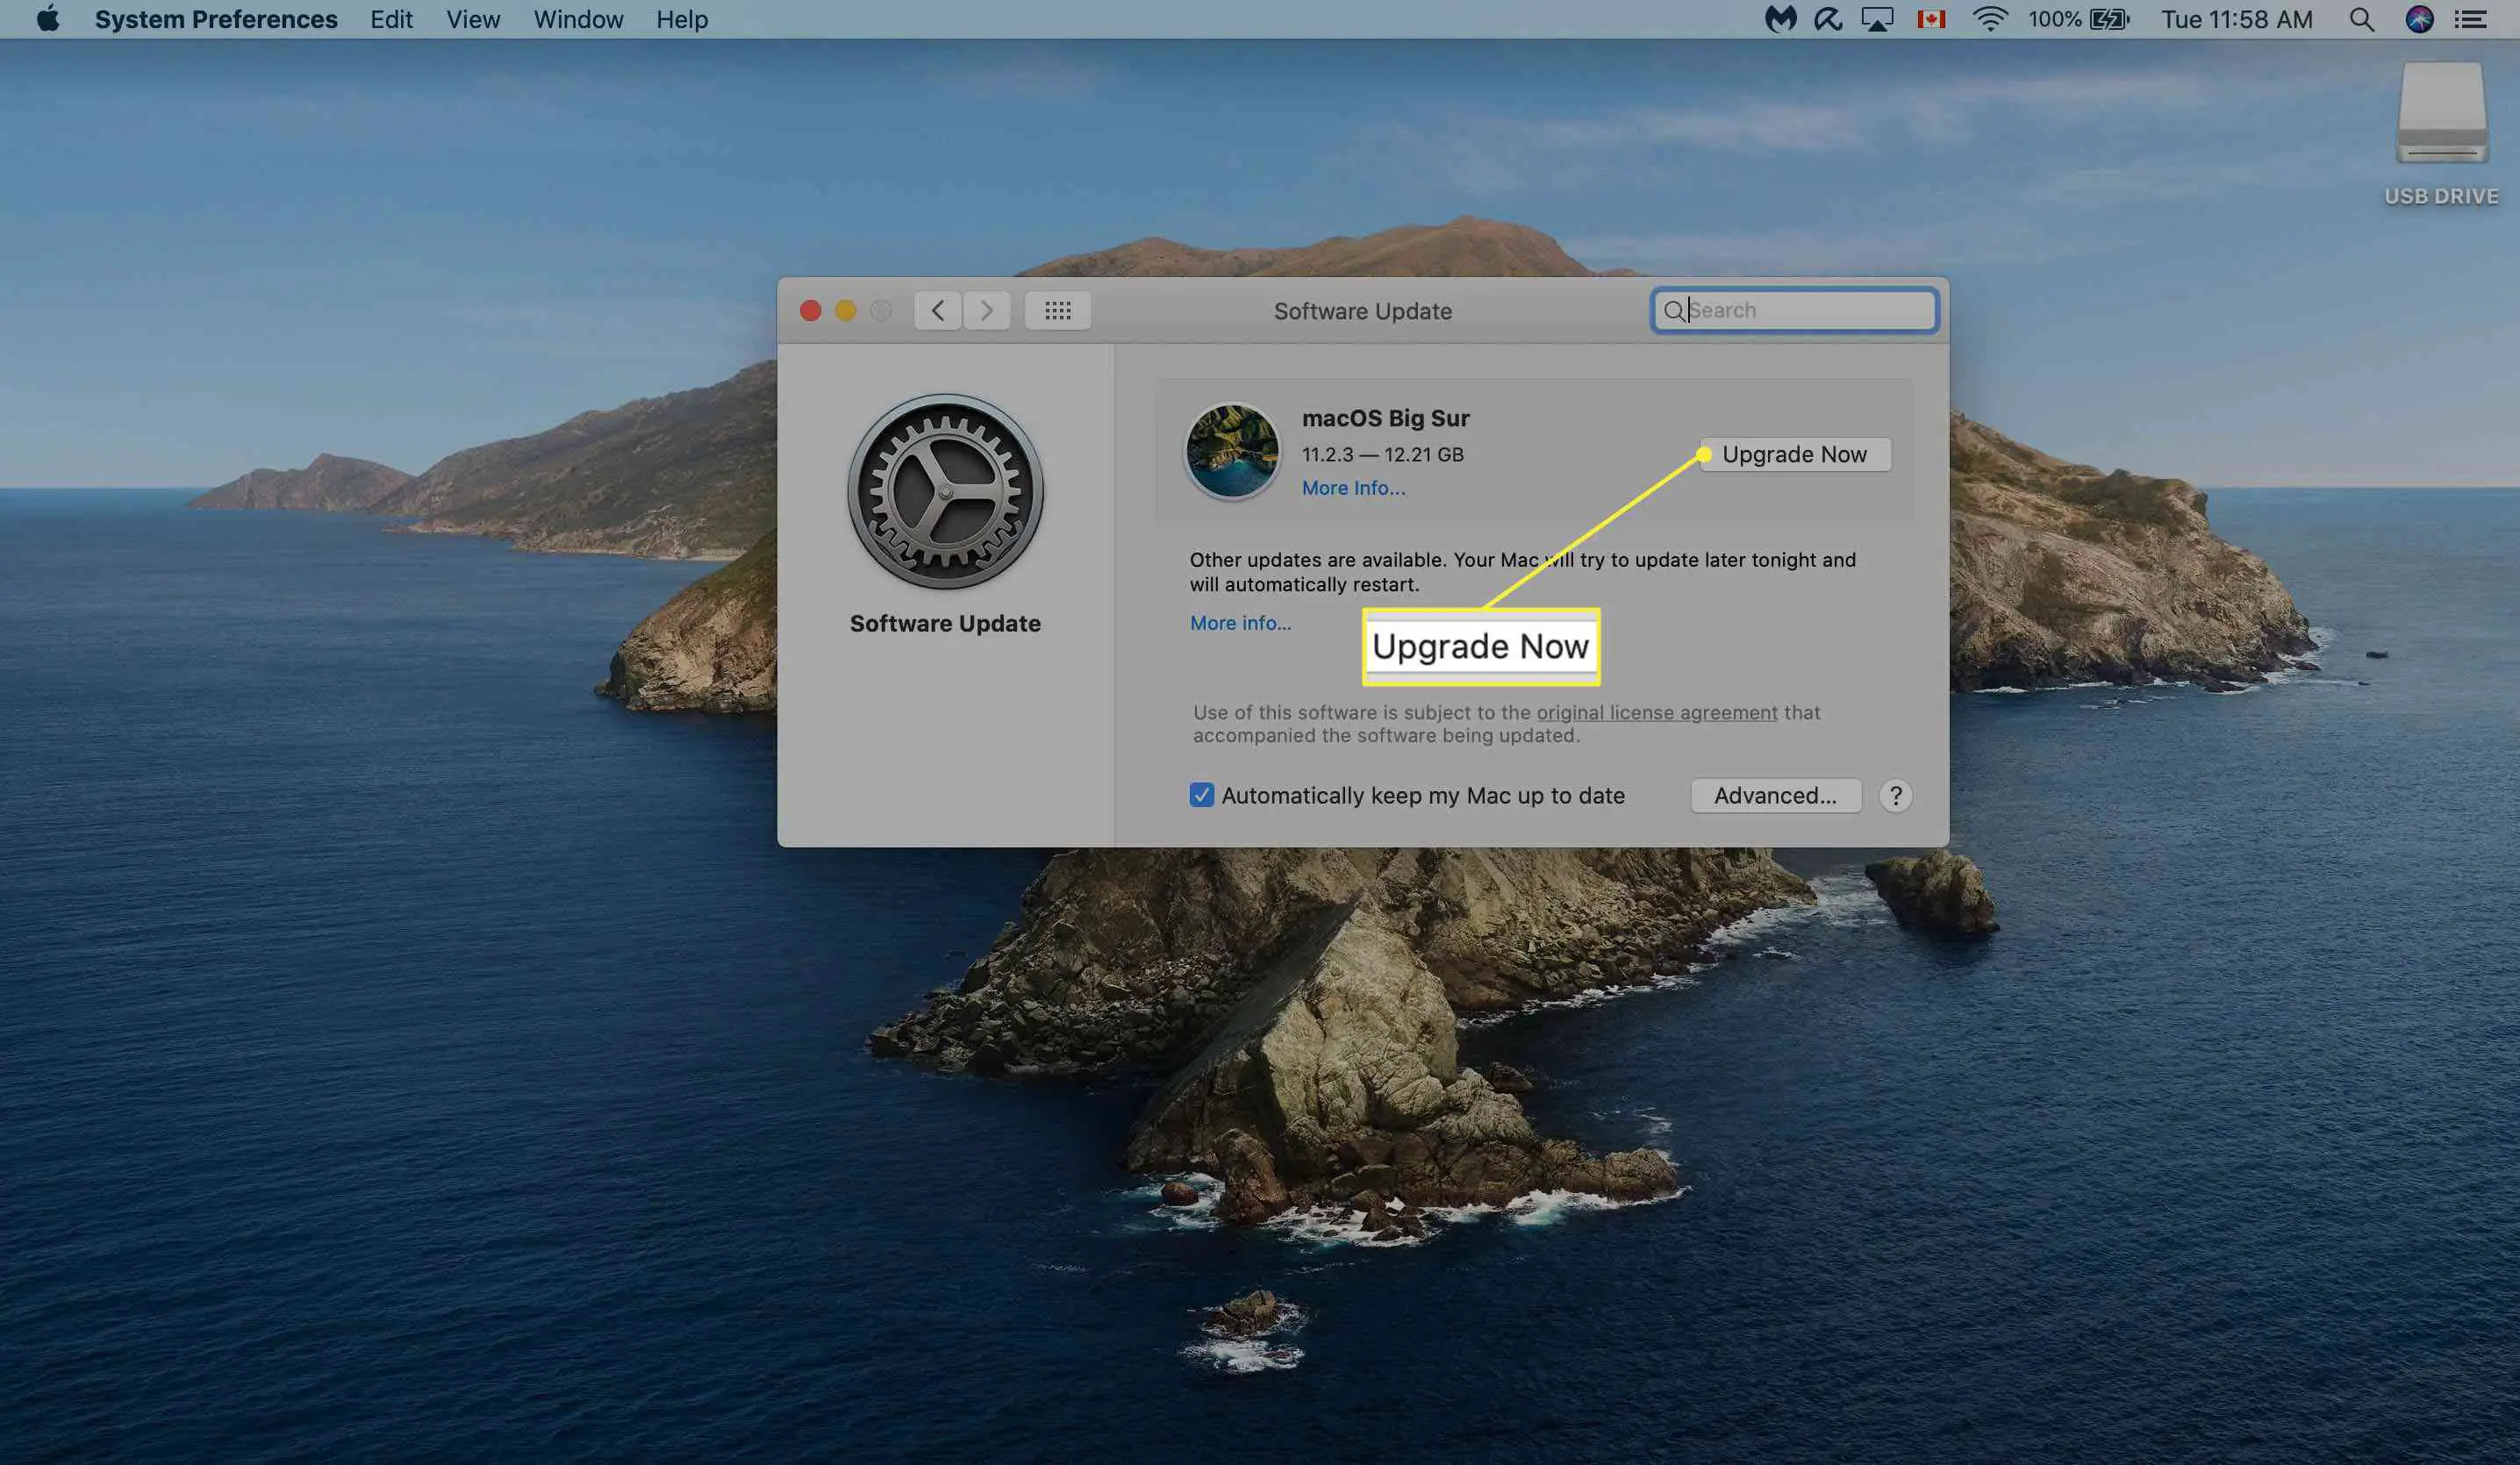 Confirmando a atualização de software no Mac.